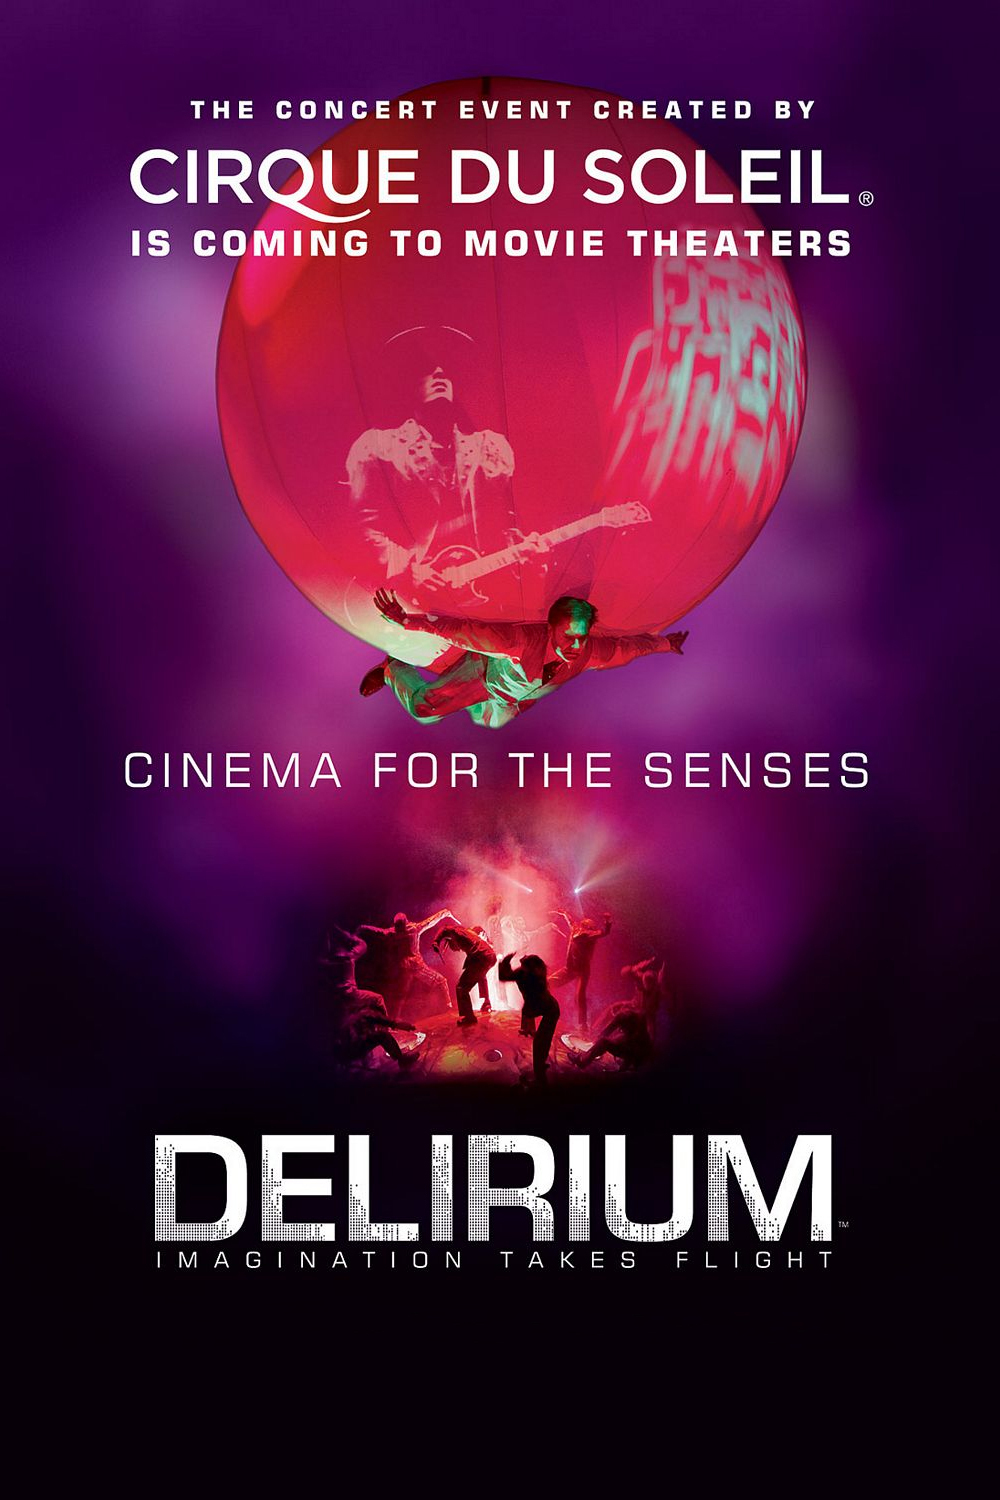 affiche du film Cirque du Soleil: Delirium